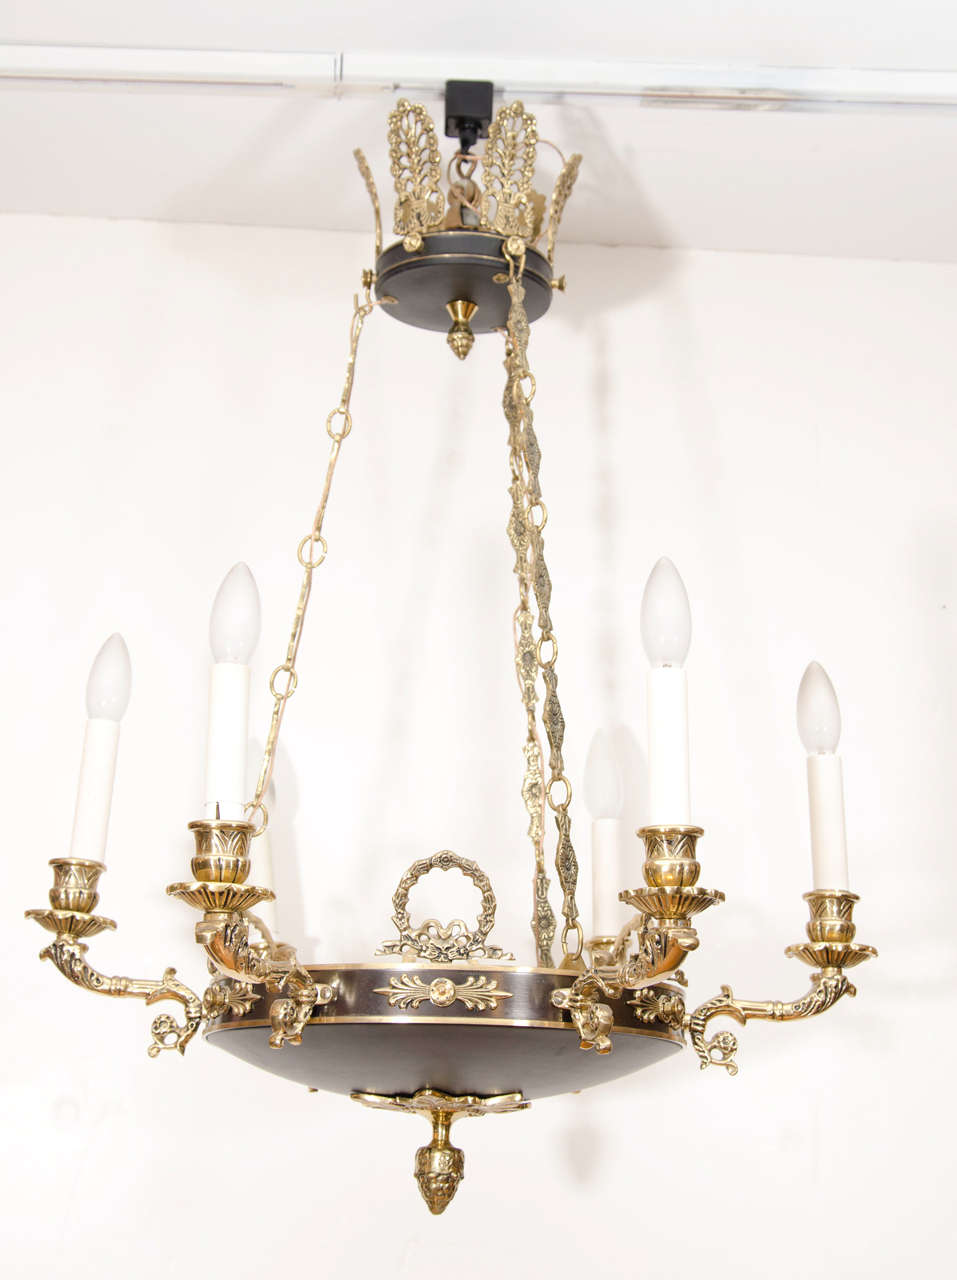 Patiniertes Messing und Messingdetails aus der Gustavianischen Zeit vor der Elektrifizierung, mit sechs künstlichen Kerzen, die an drei dekorativen Messingketten hängen, überragt von einem 